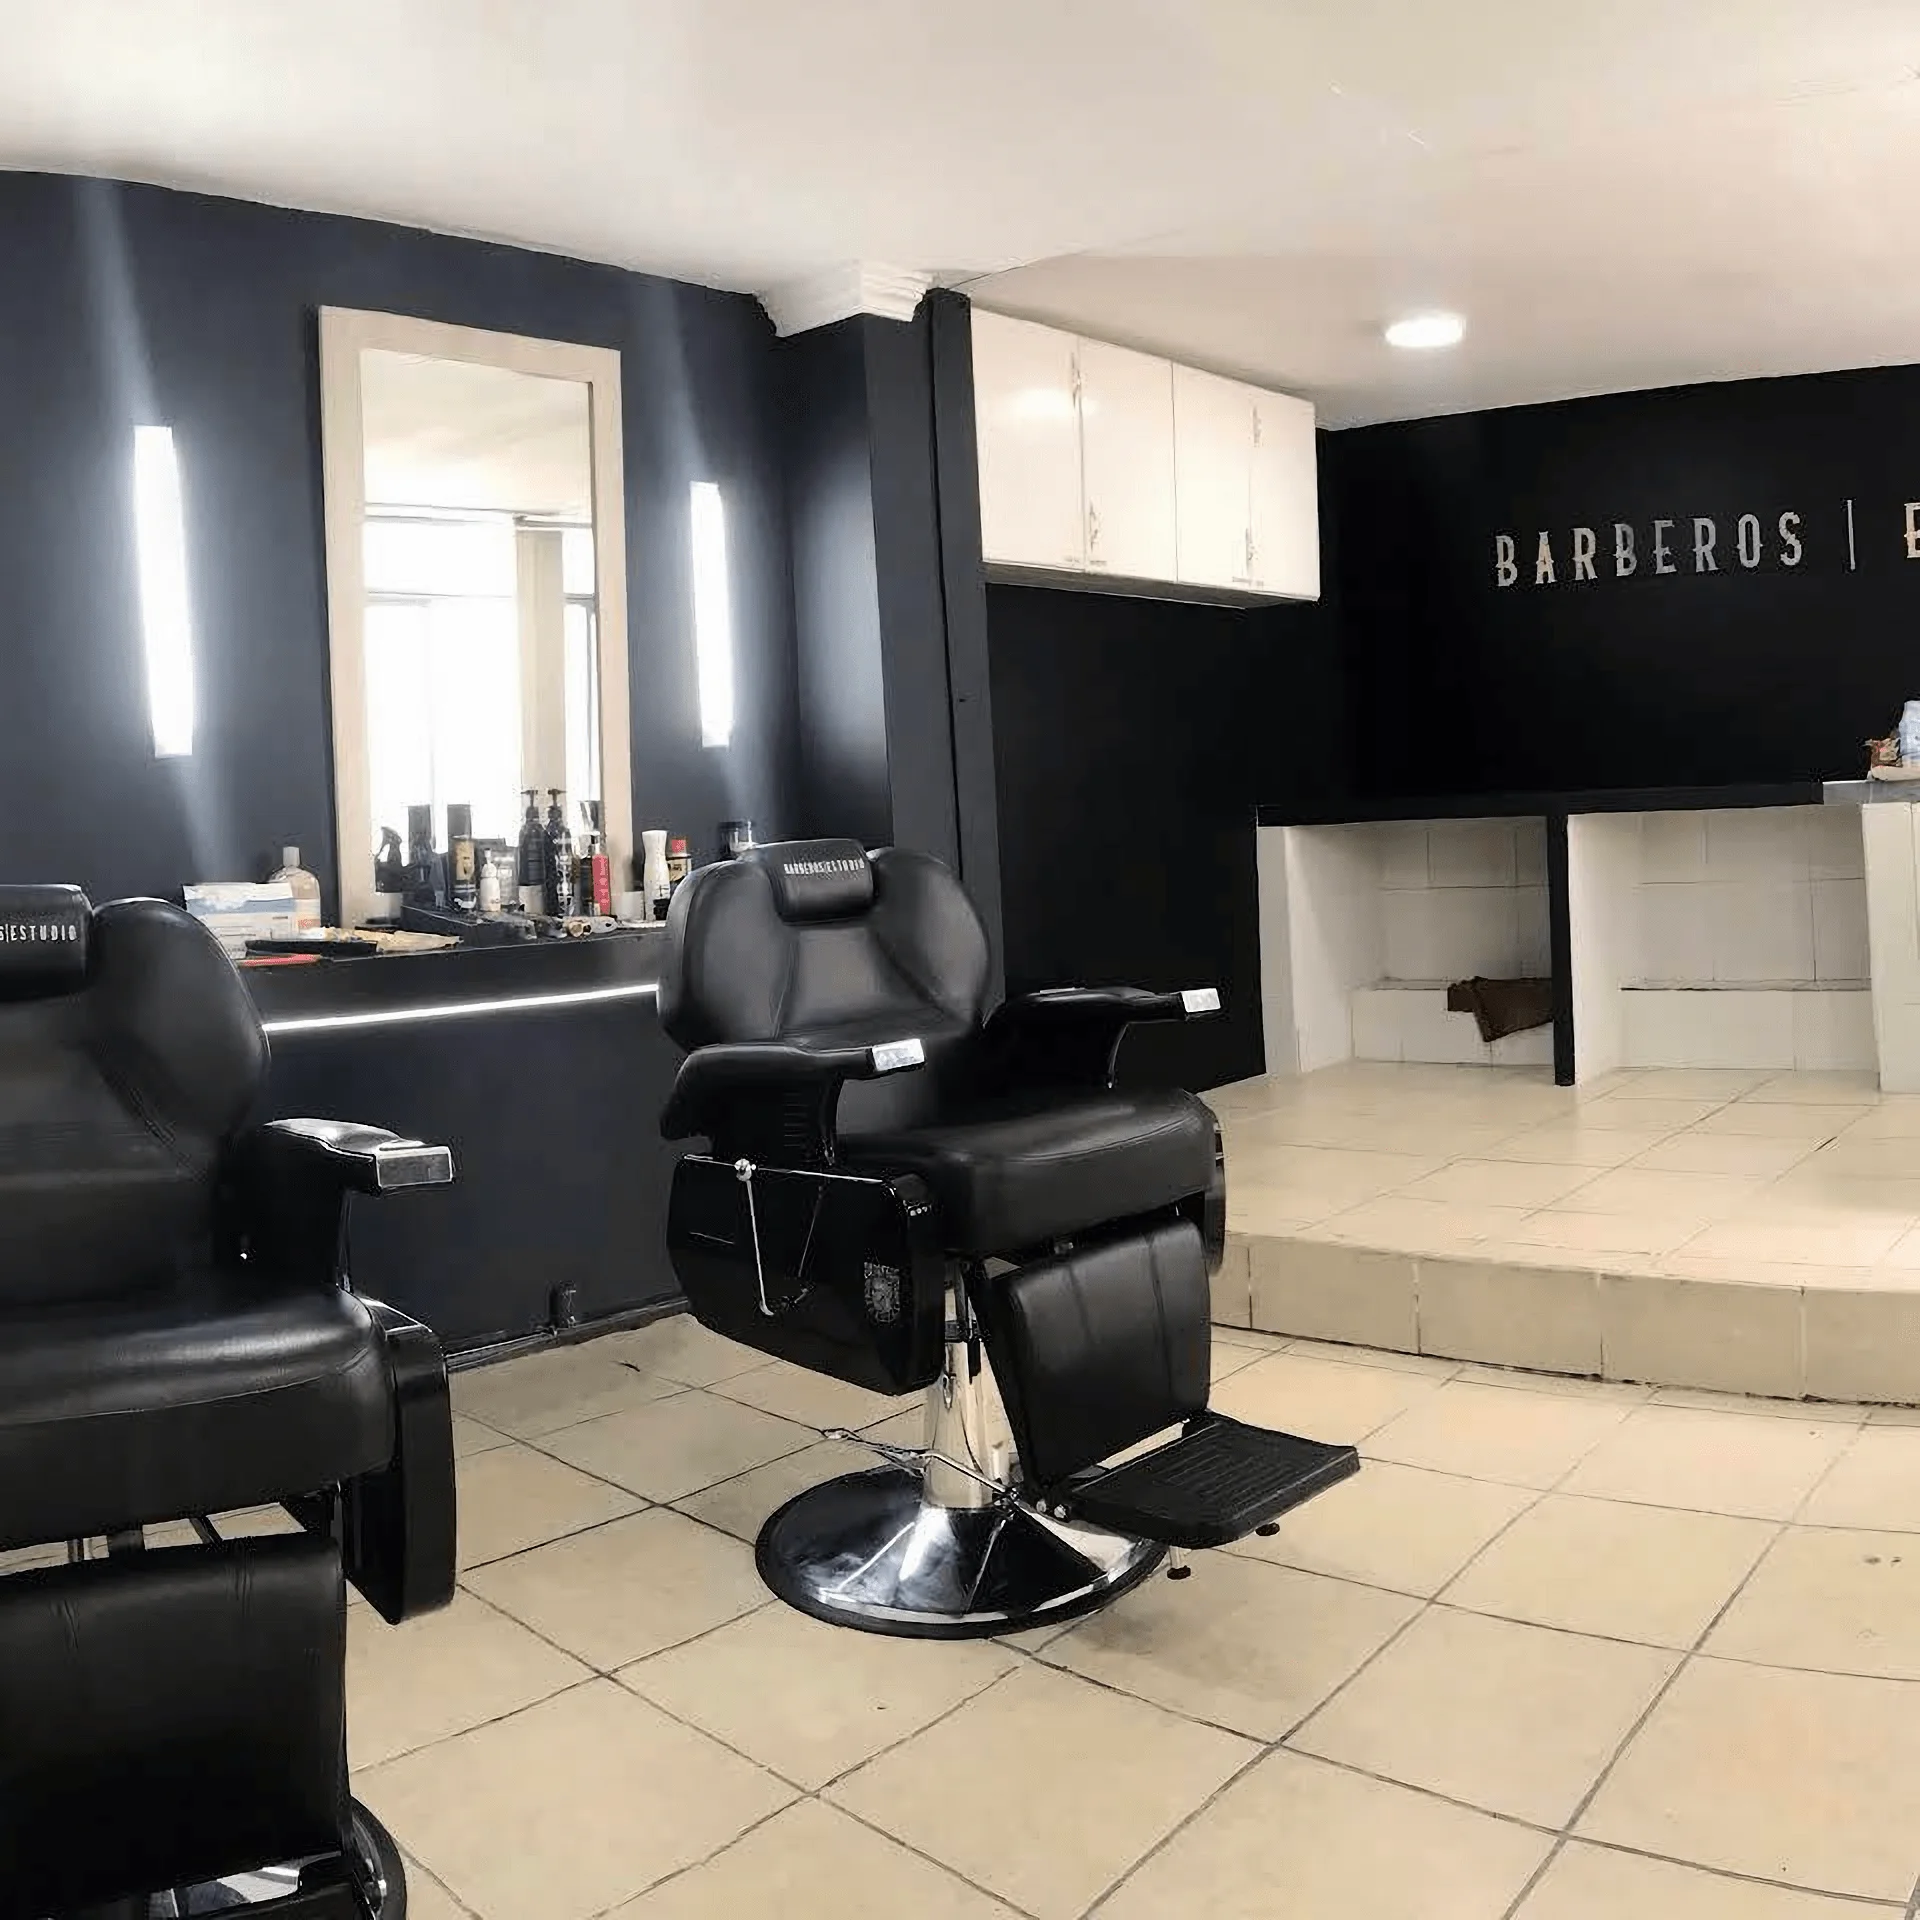 Barbería-barberos-estudio-12715